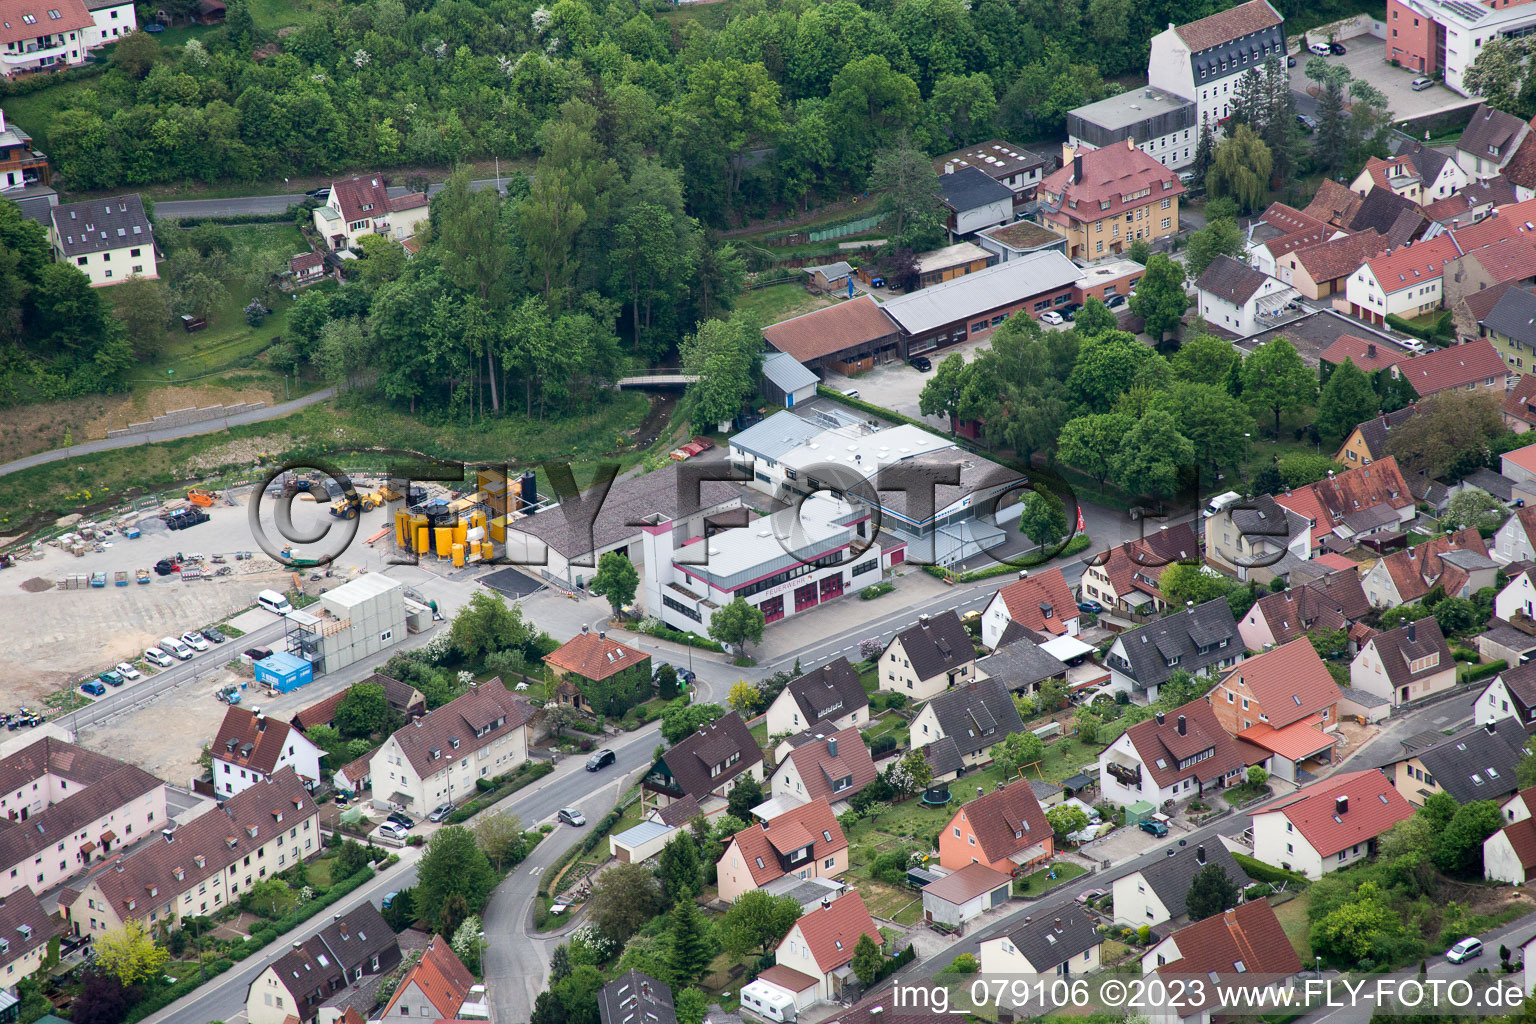 Schonungen dans le département Bavière, Allemagne vue d'en haut